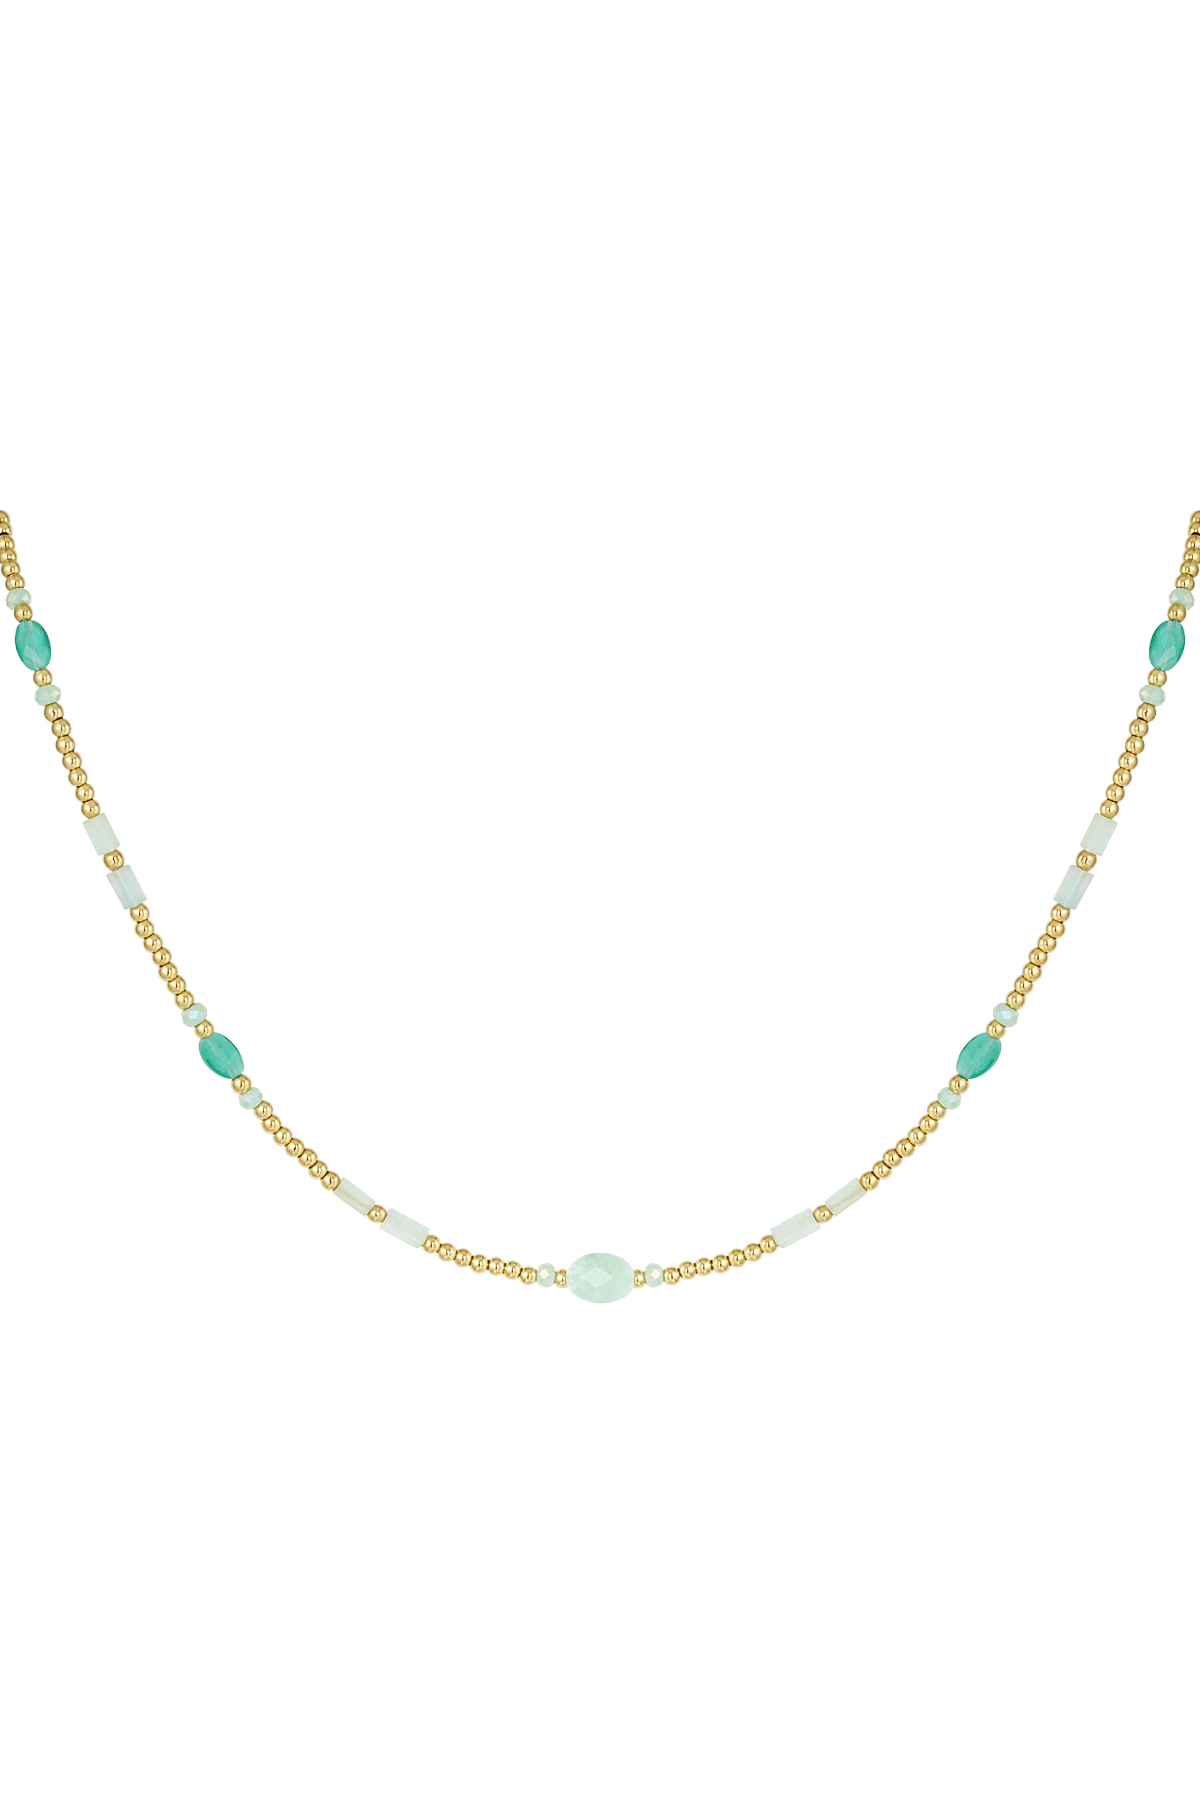 Perlenkette mit bunten Details - grüner und goldener Edelstahl